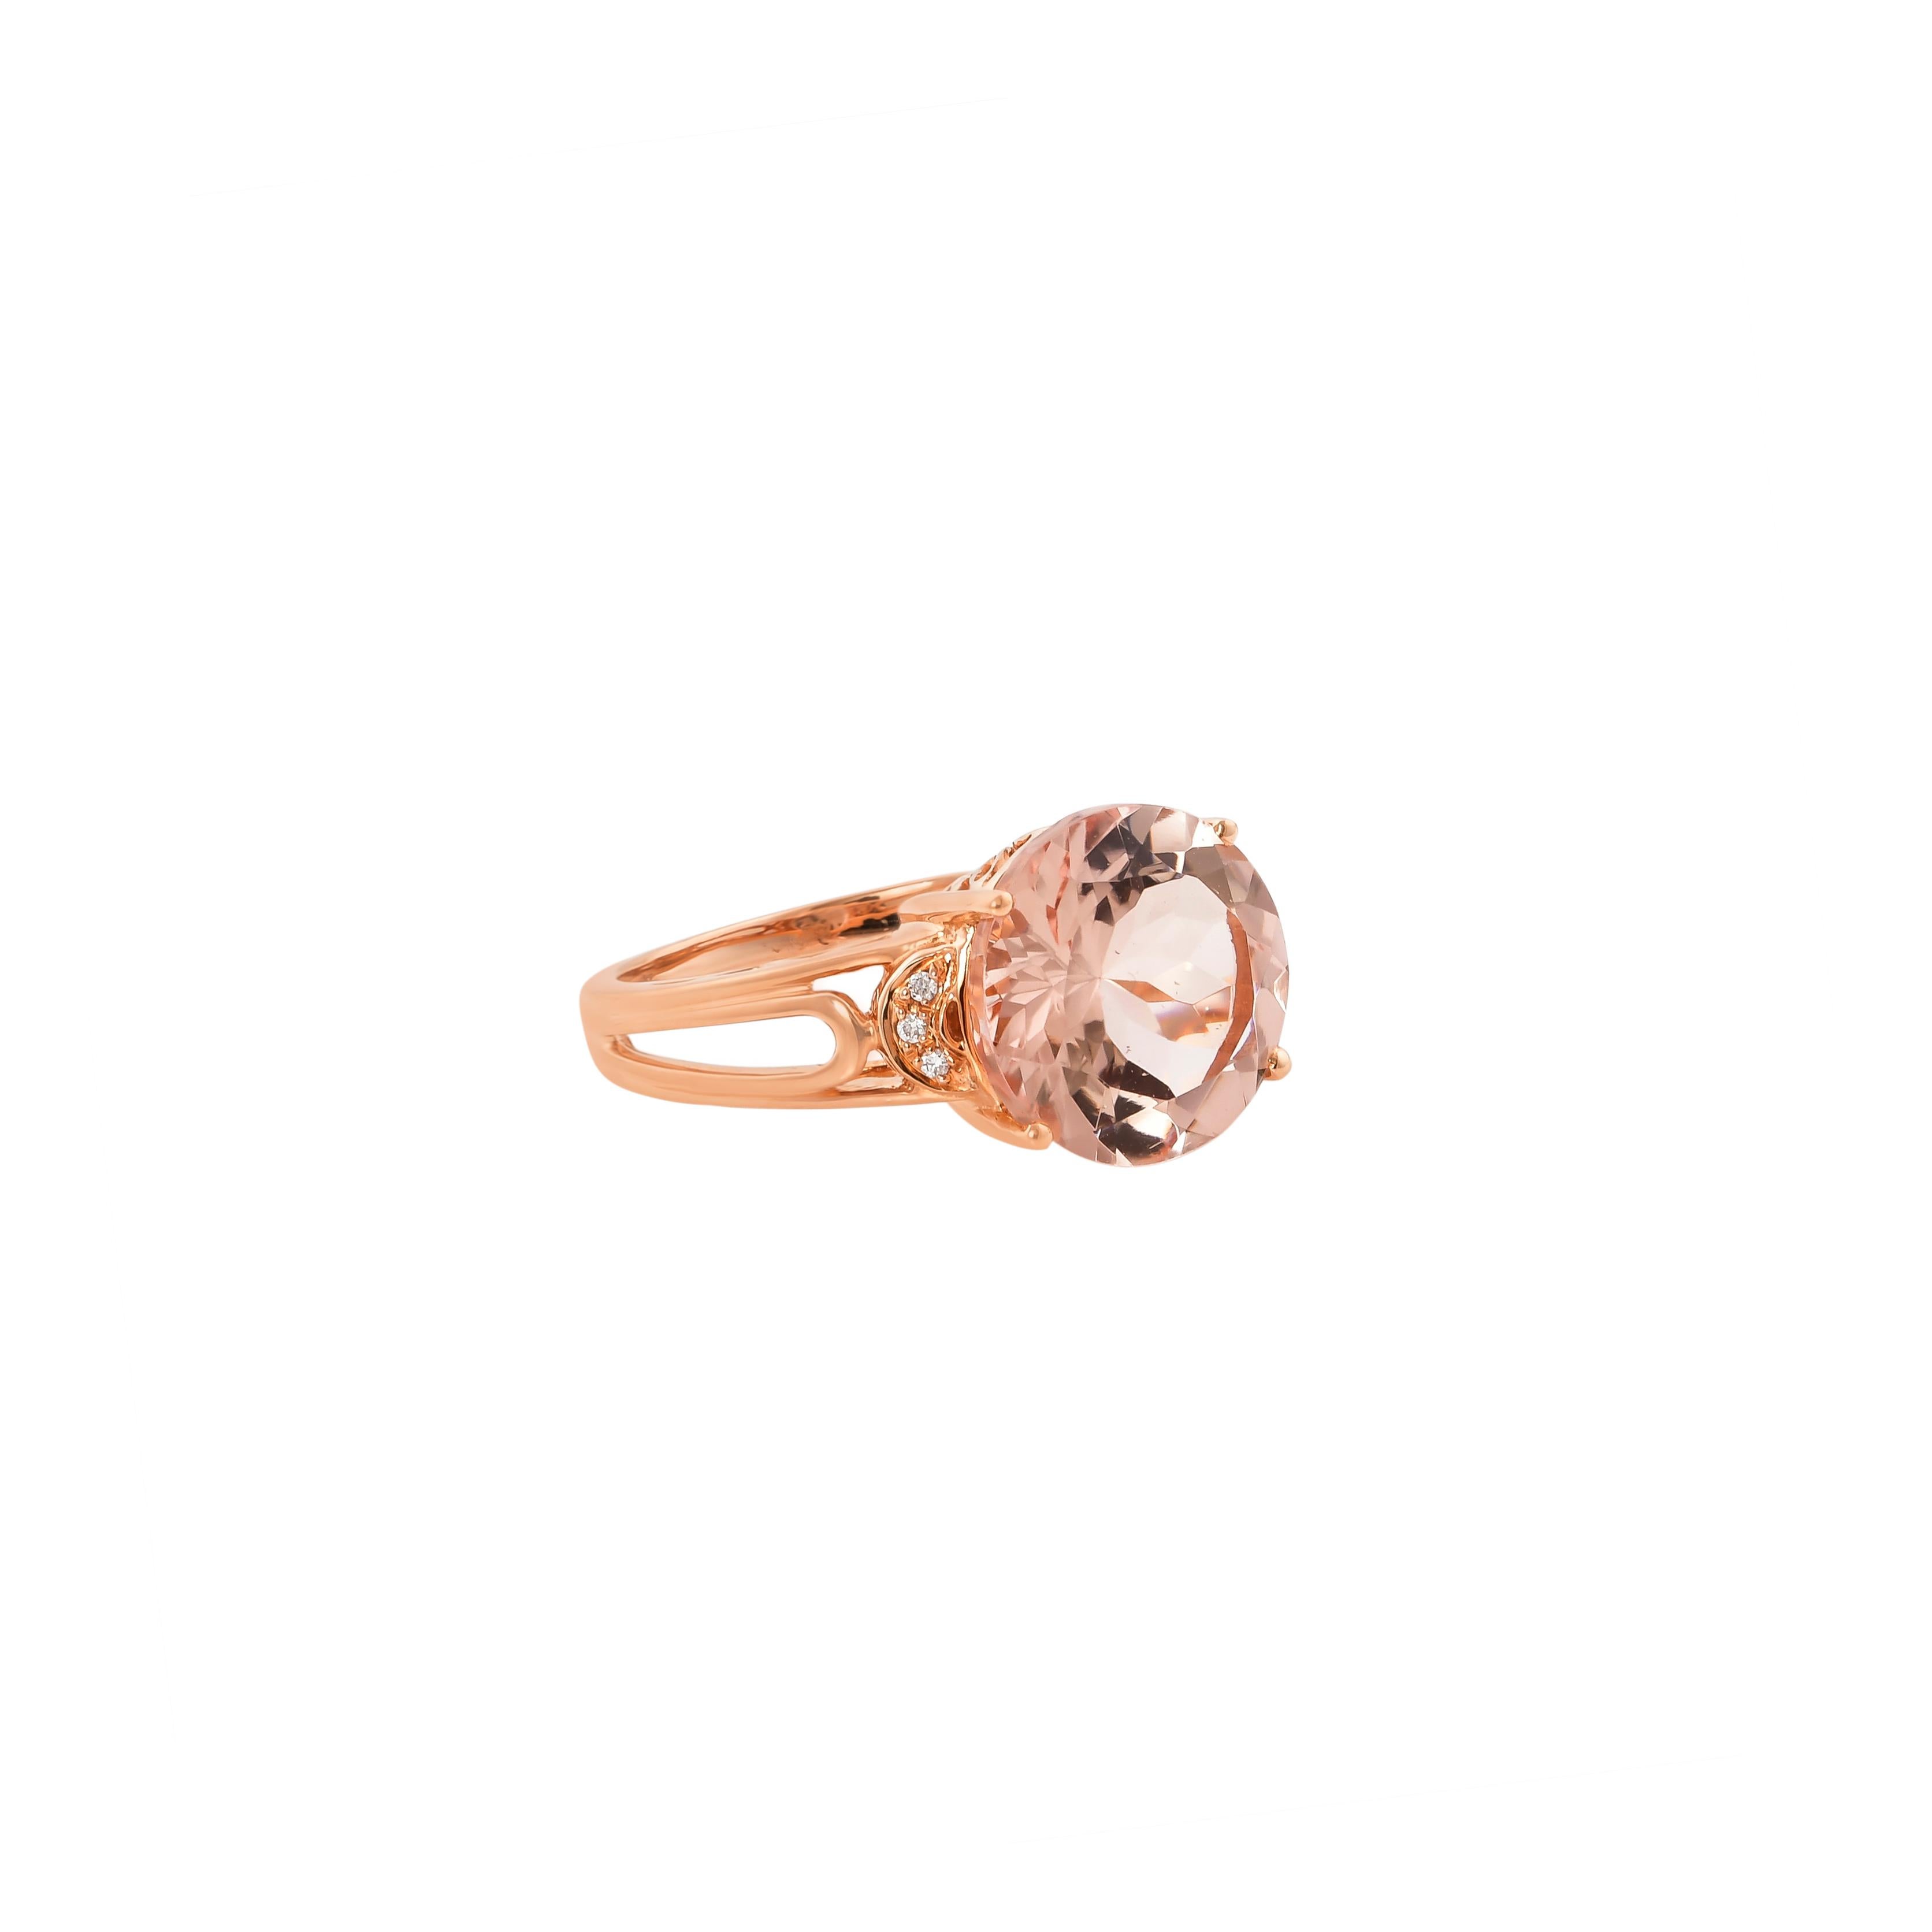 Diese Kollektion bietet eine Reihe von prächtigen Morganiten! Diese mit Diamanten besetzten Ringe sind aus Roségold gefertigt und wirken klassisch und elegant. 

Klassischer Morganit-Ring aus 18 Karat Roségold mit Diamanten. 

Morganit: 5,98 Karat,